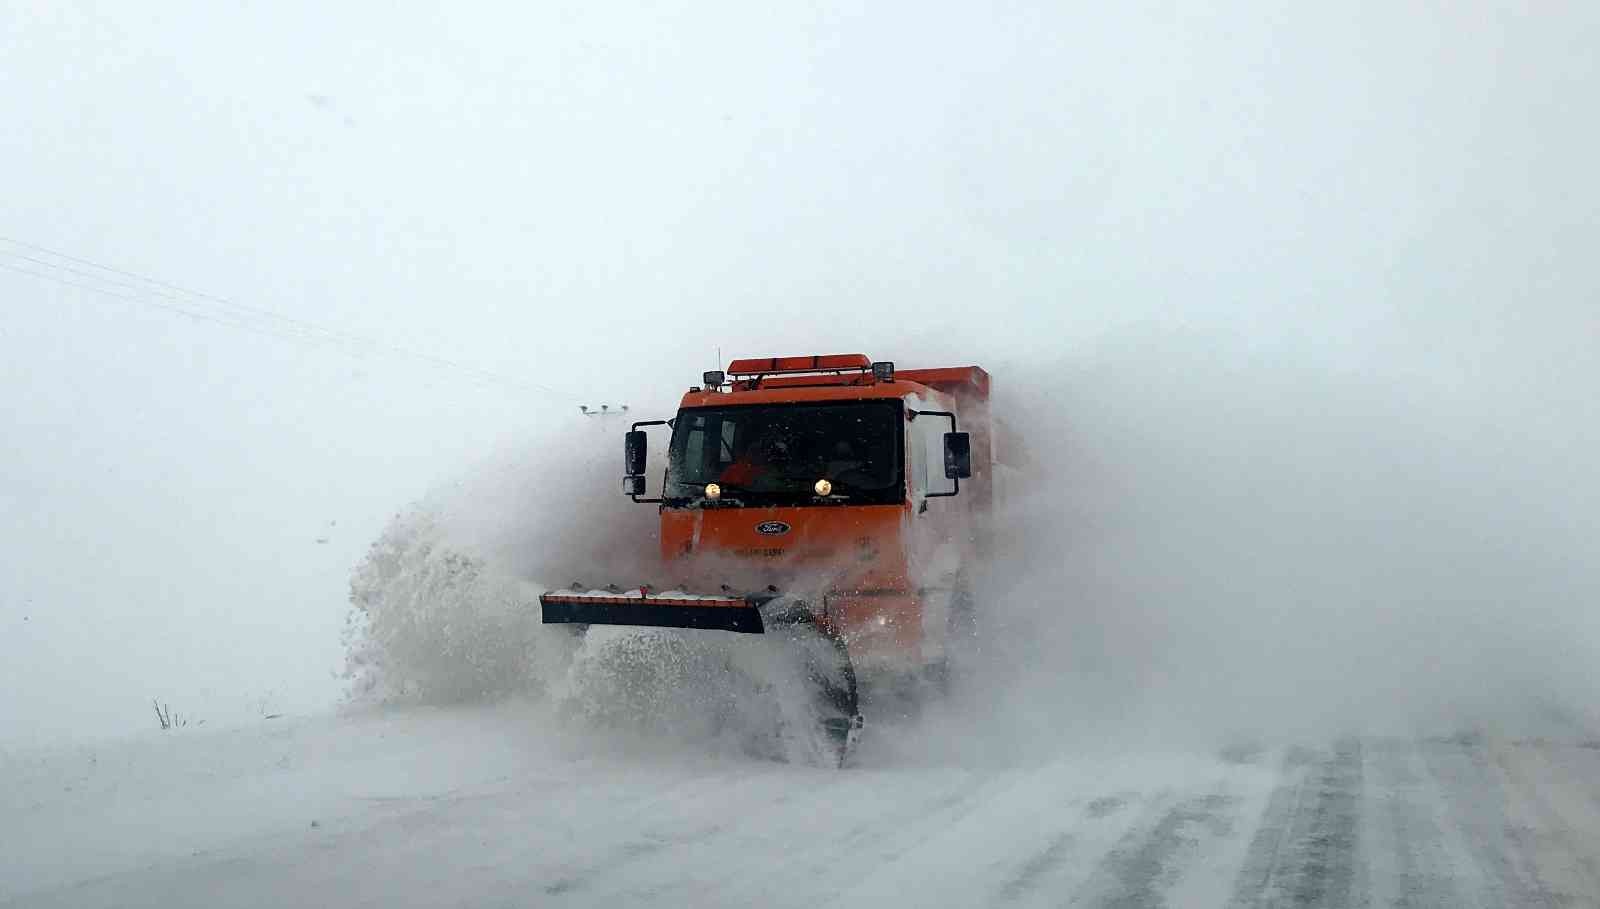 Bayburt’ta kar, tipi ulaşımı aksatıyor #bayburt